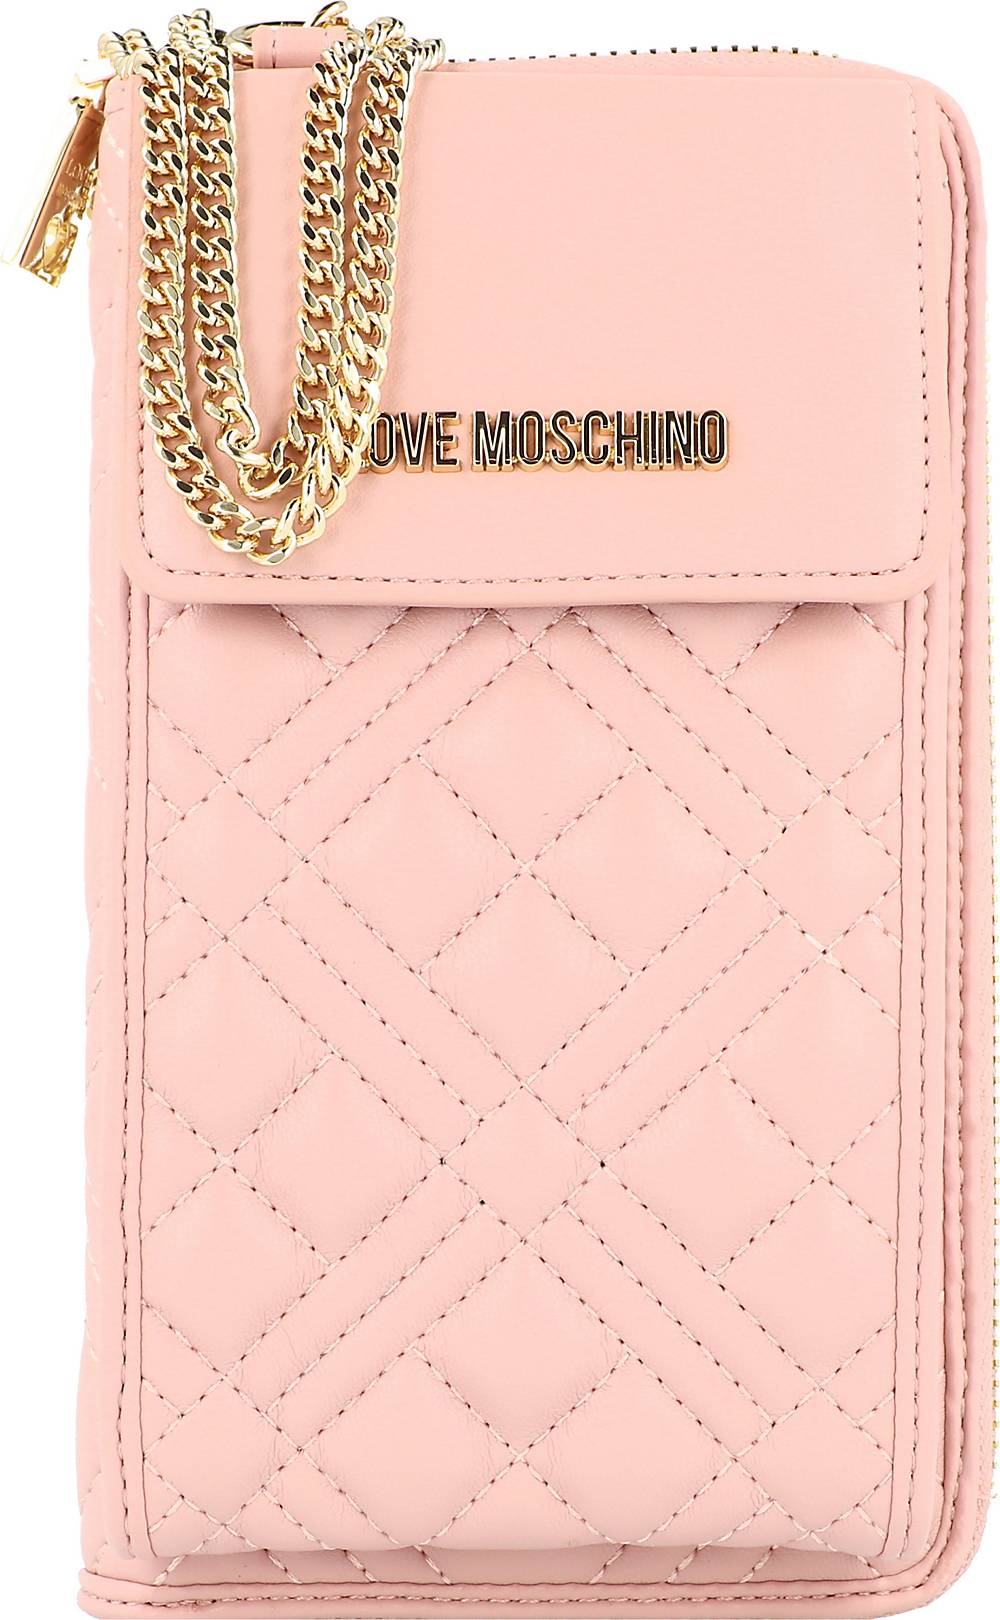 Love Moschino, Embossed Handytasche Geldbörse 11 Cm in rosa, Handyhüllen & Zubehör für Damen